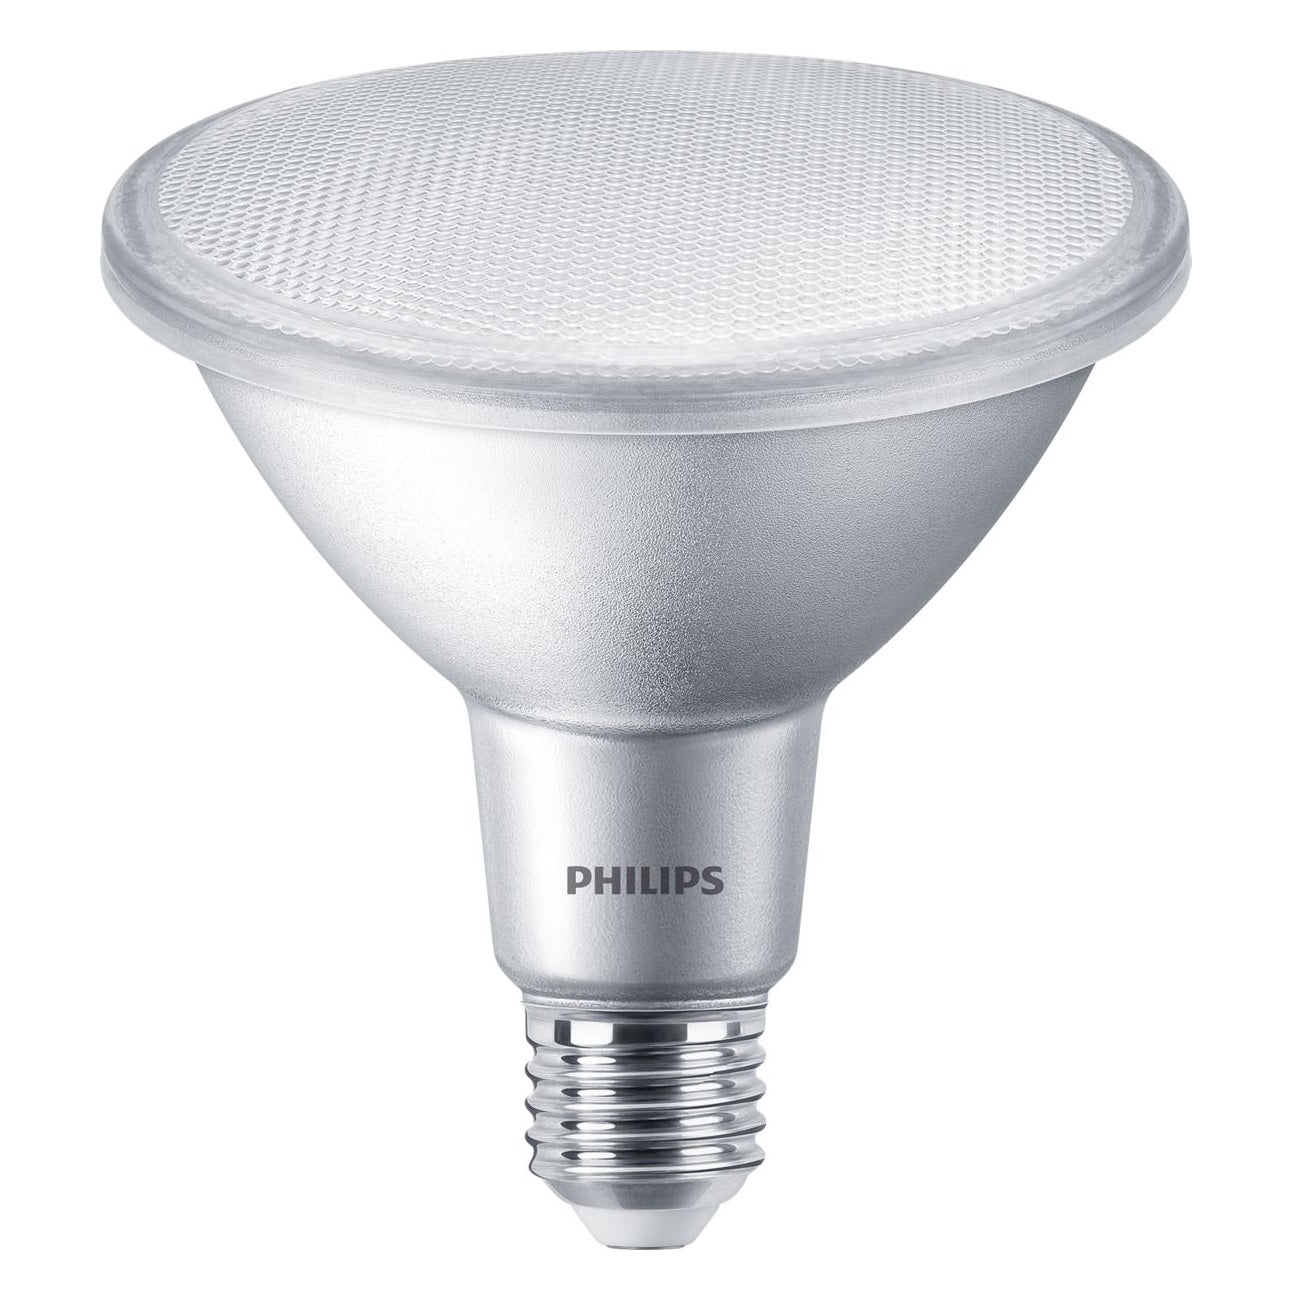 Philips CorePro LEDspot 9-60W PAR38 927 E27 25° 750lm